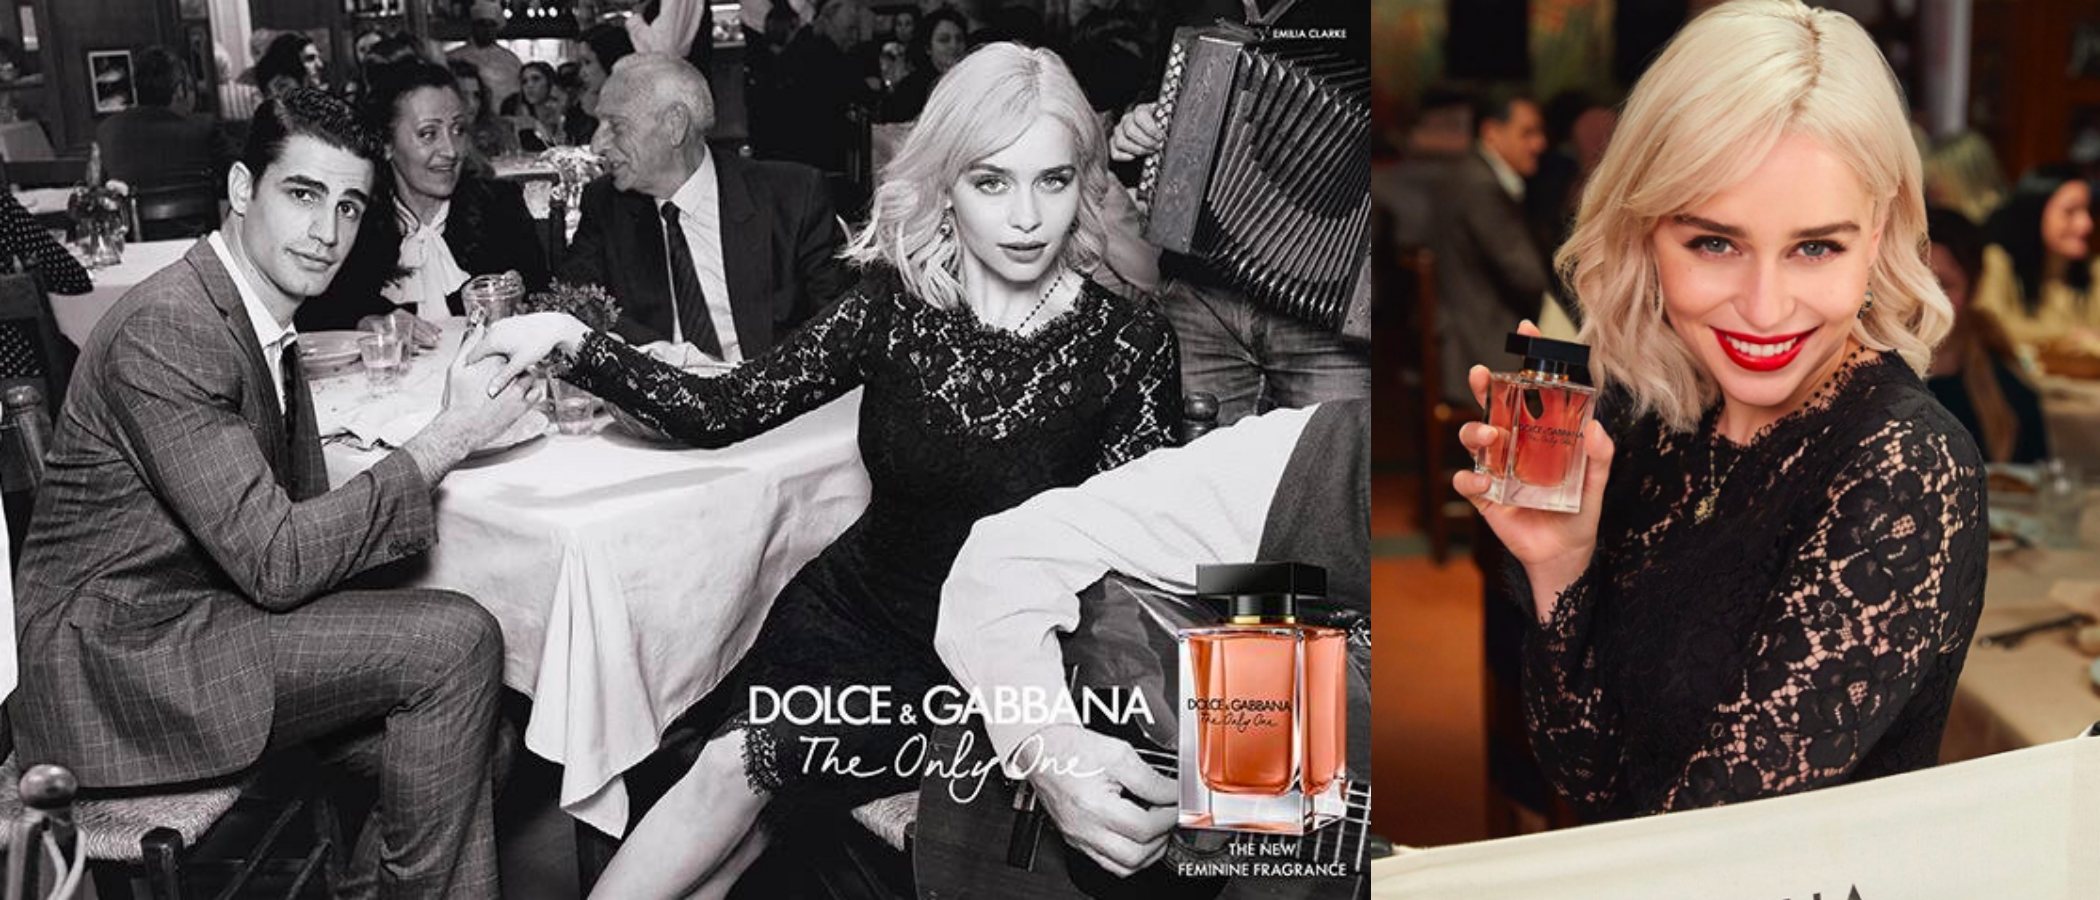 Emilia Clarke es el rostro y la voz de 'The Only One', la nueva fragancia femenina de Dolce & Gabbana